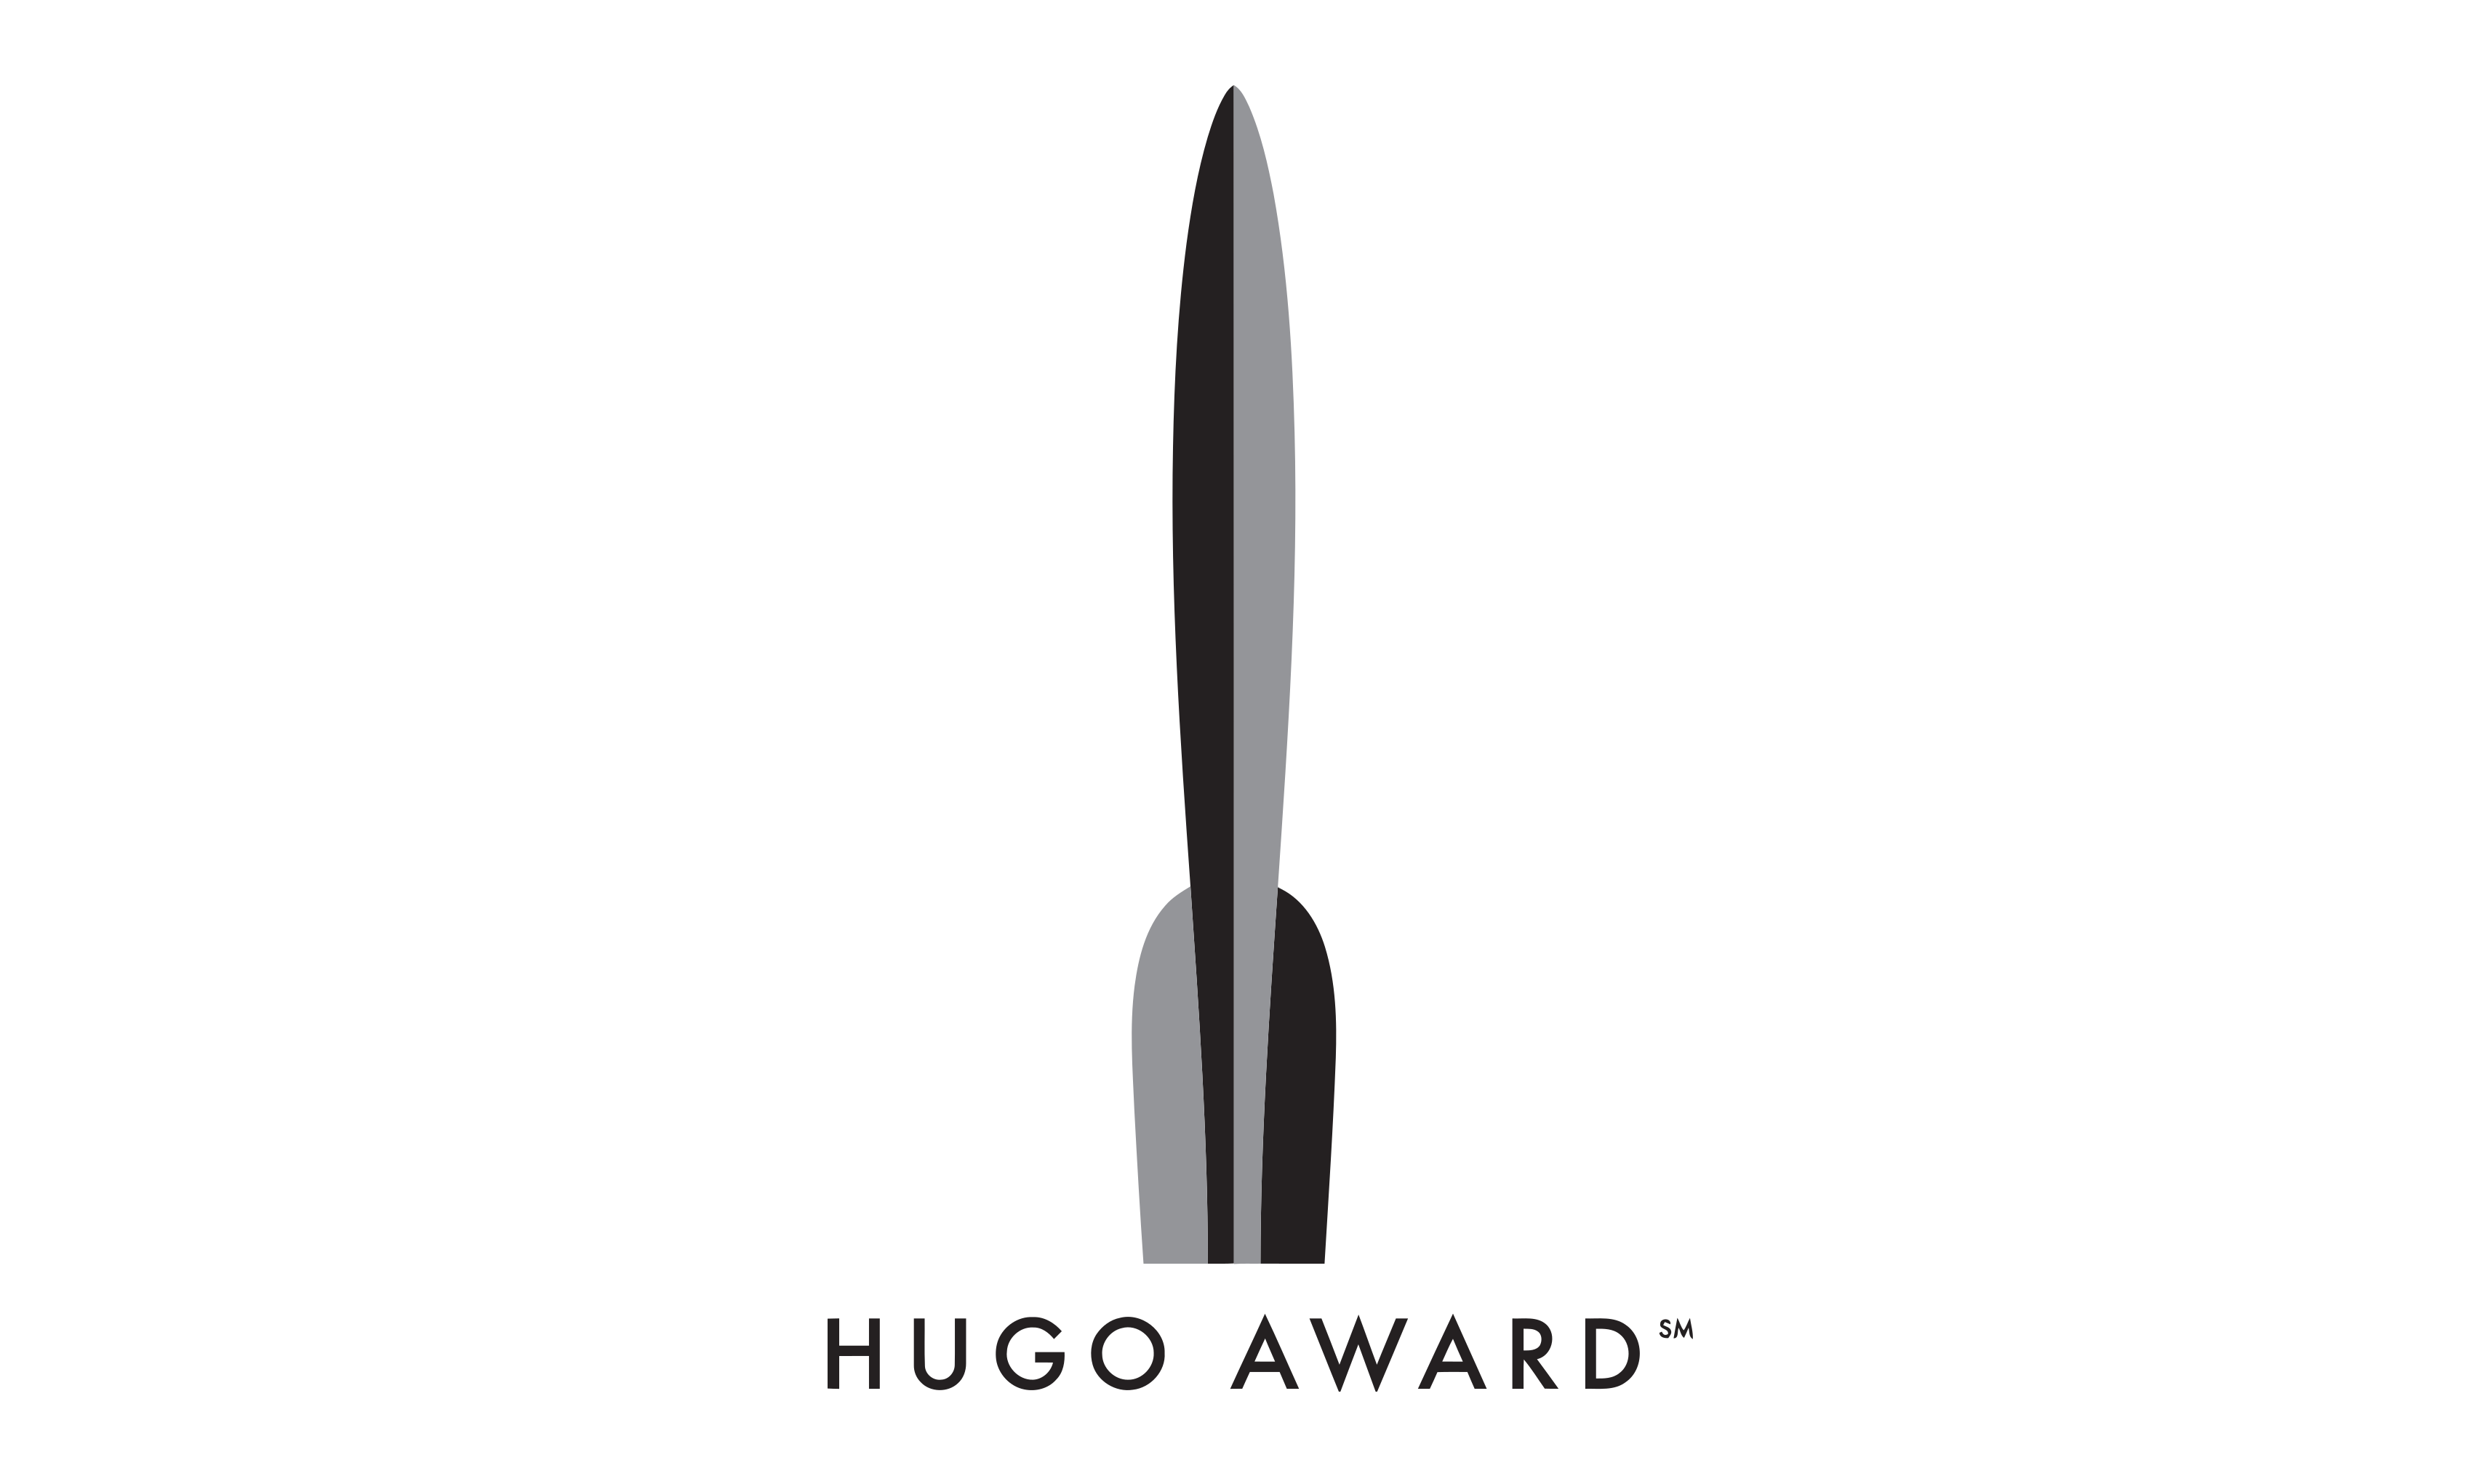 「雨果奖」将在 2021 年增设「最佳游戏奖项」